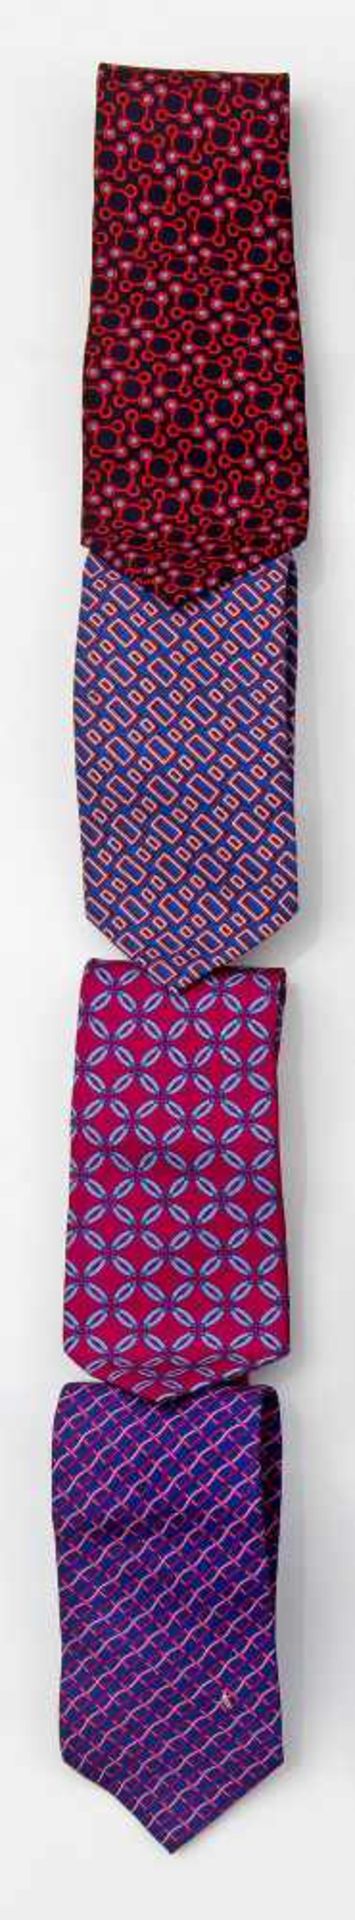 Vier Krawatten von TrussardiSeide. Unterschiedliche, geometrische bzw. mosaikartig angelegte